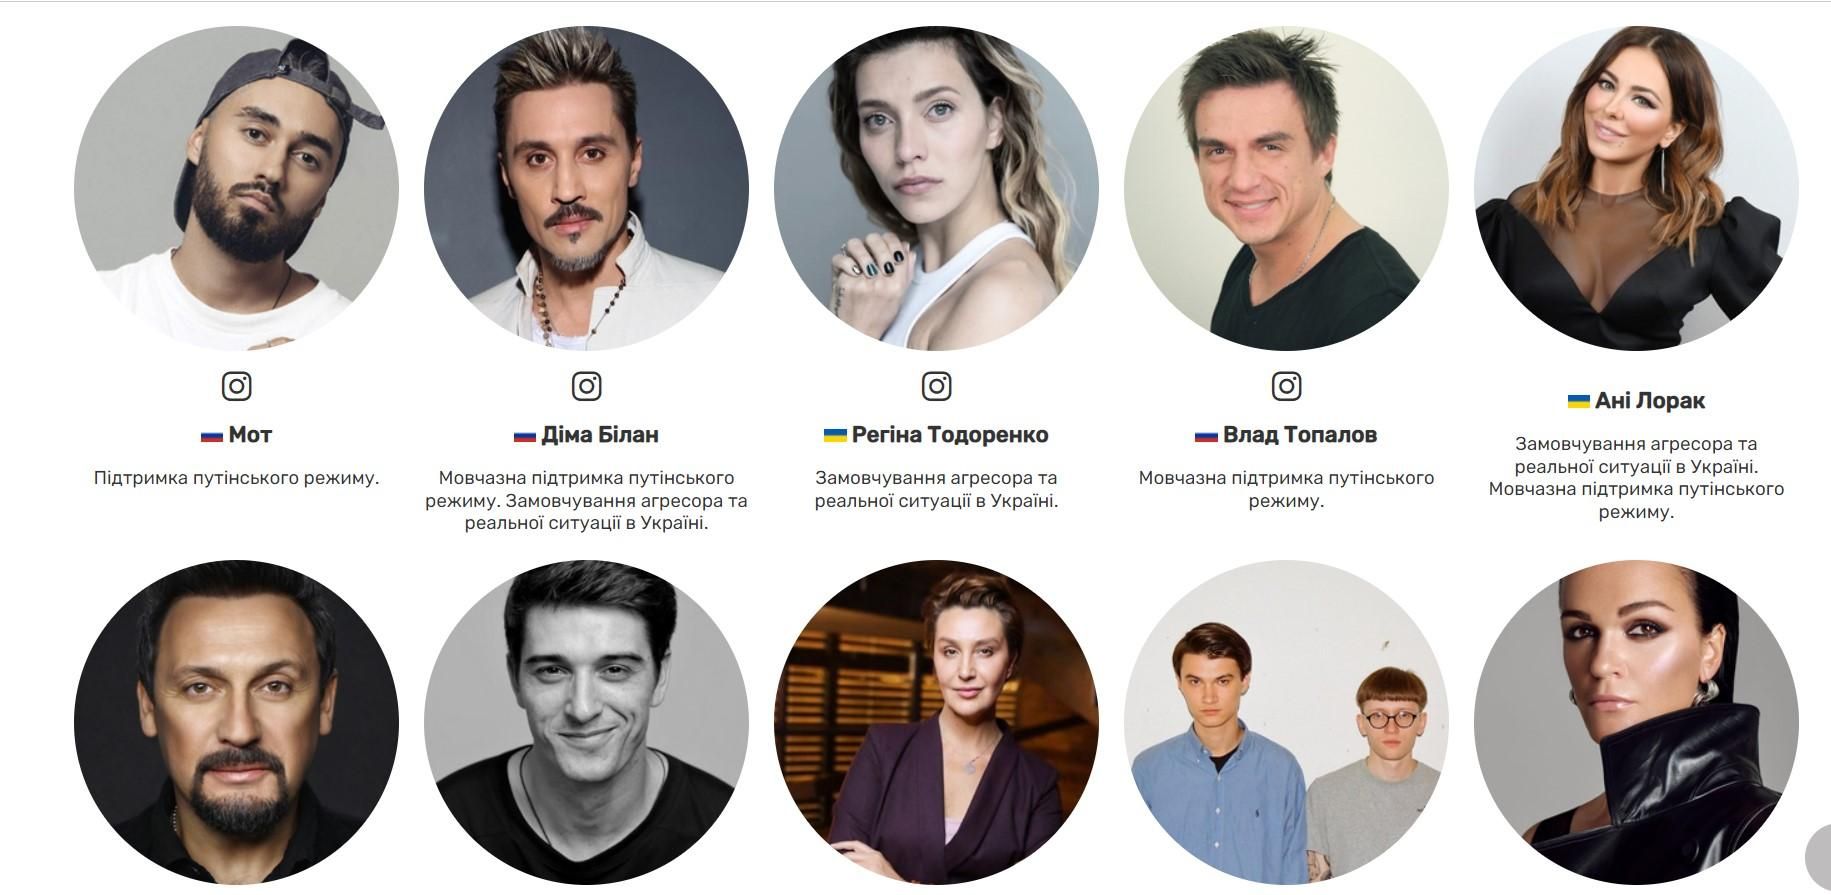 Доска позора: блоггеры создали сайт с именами звезд, которые поддерживают Росию или умалчивают - Showbiz